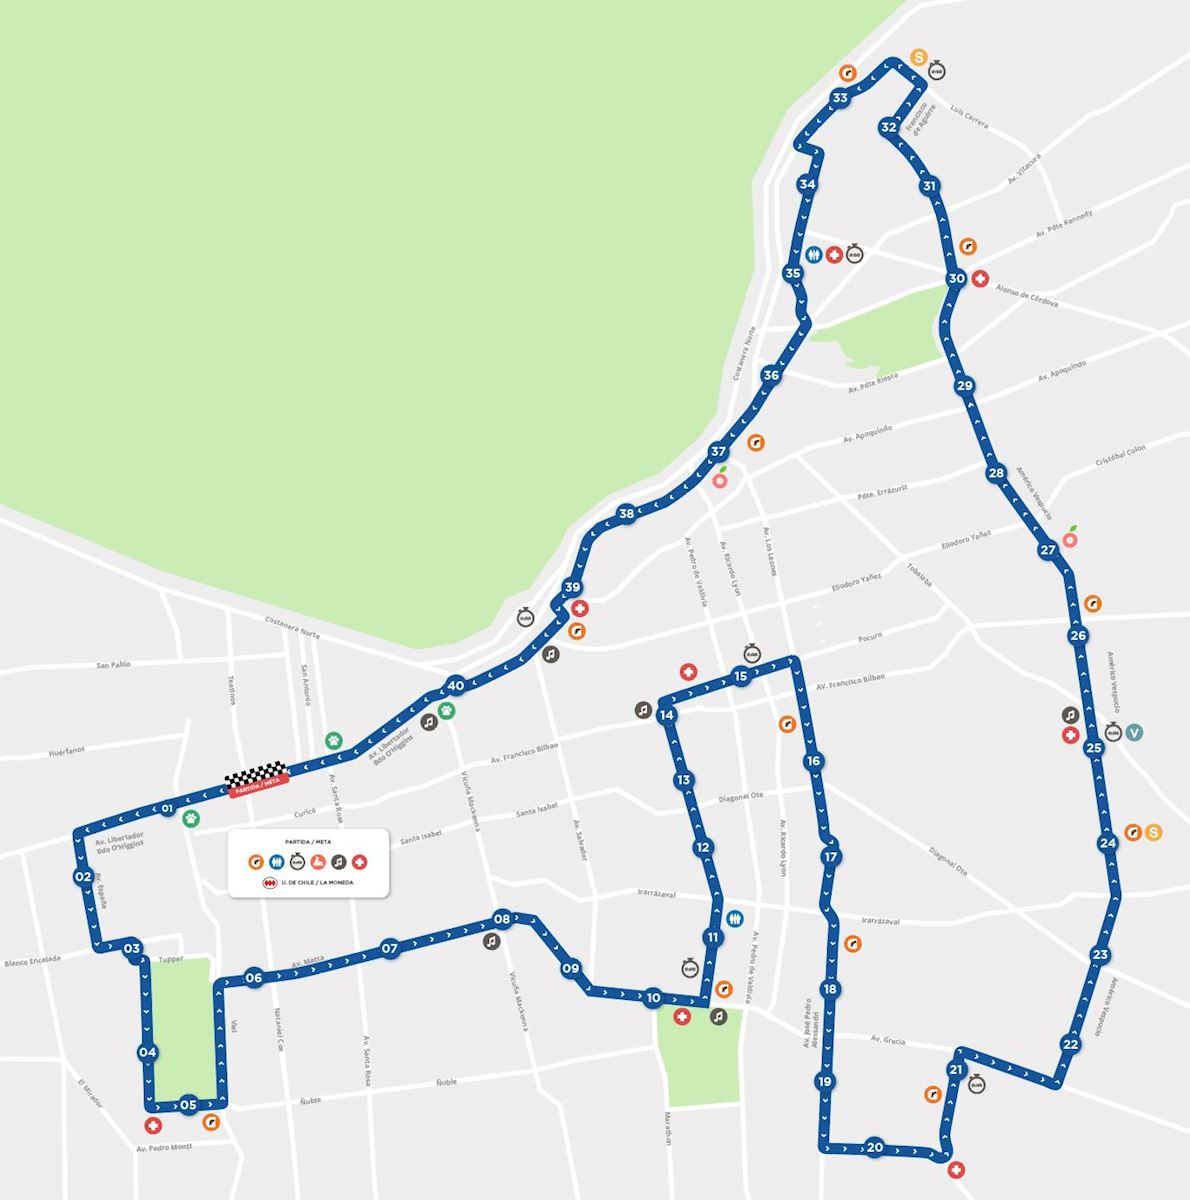 Maraton de Santiago Mappa del percorso